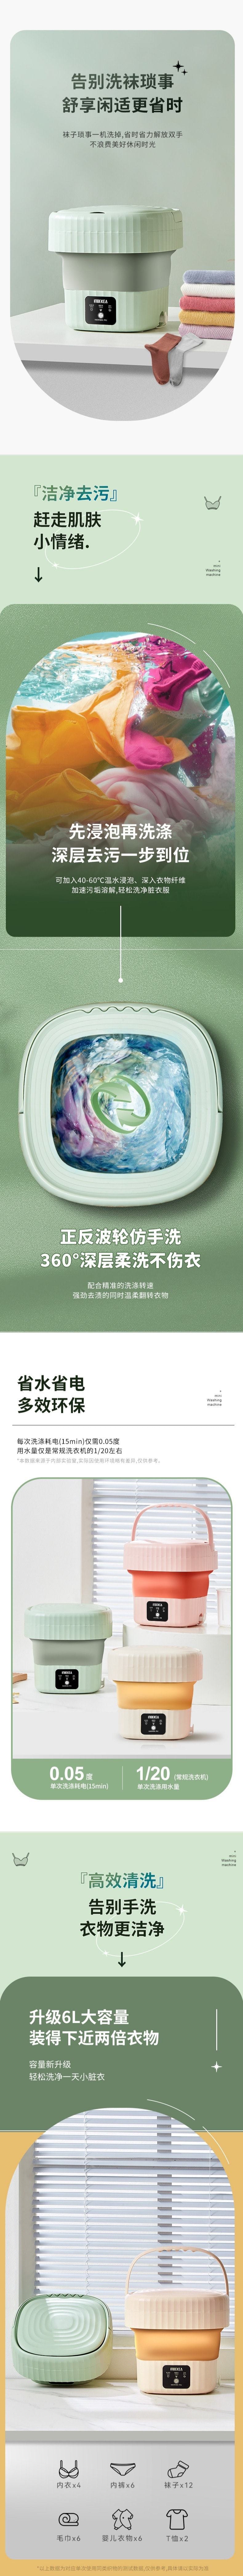 【中国直邮】iNBEKEA 折叠迷你洗衣机 带沥水 6L 两档洗涤模式 紫光抑菌 绿色